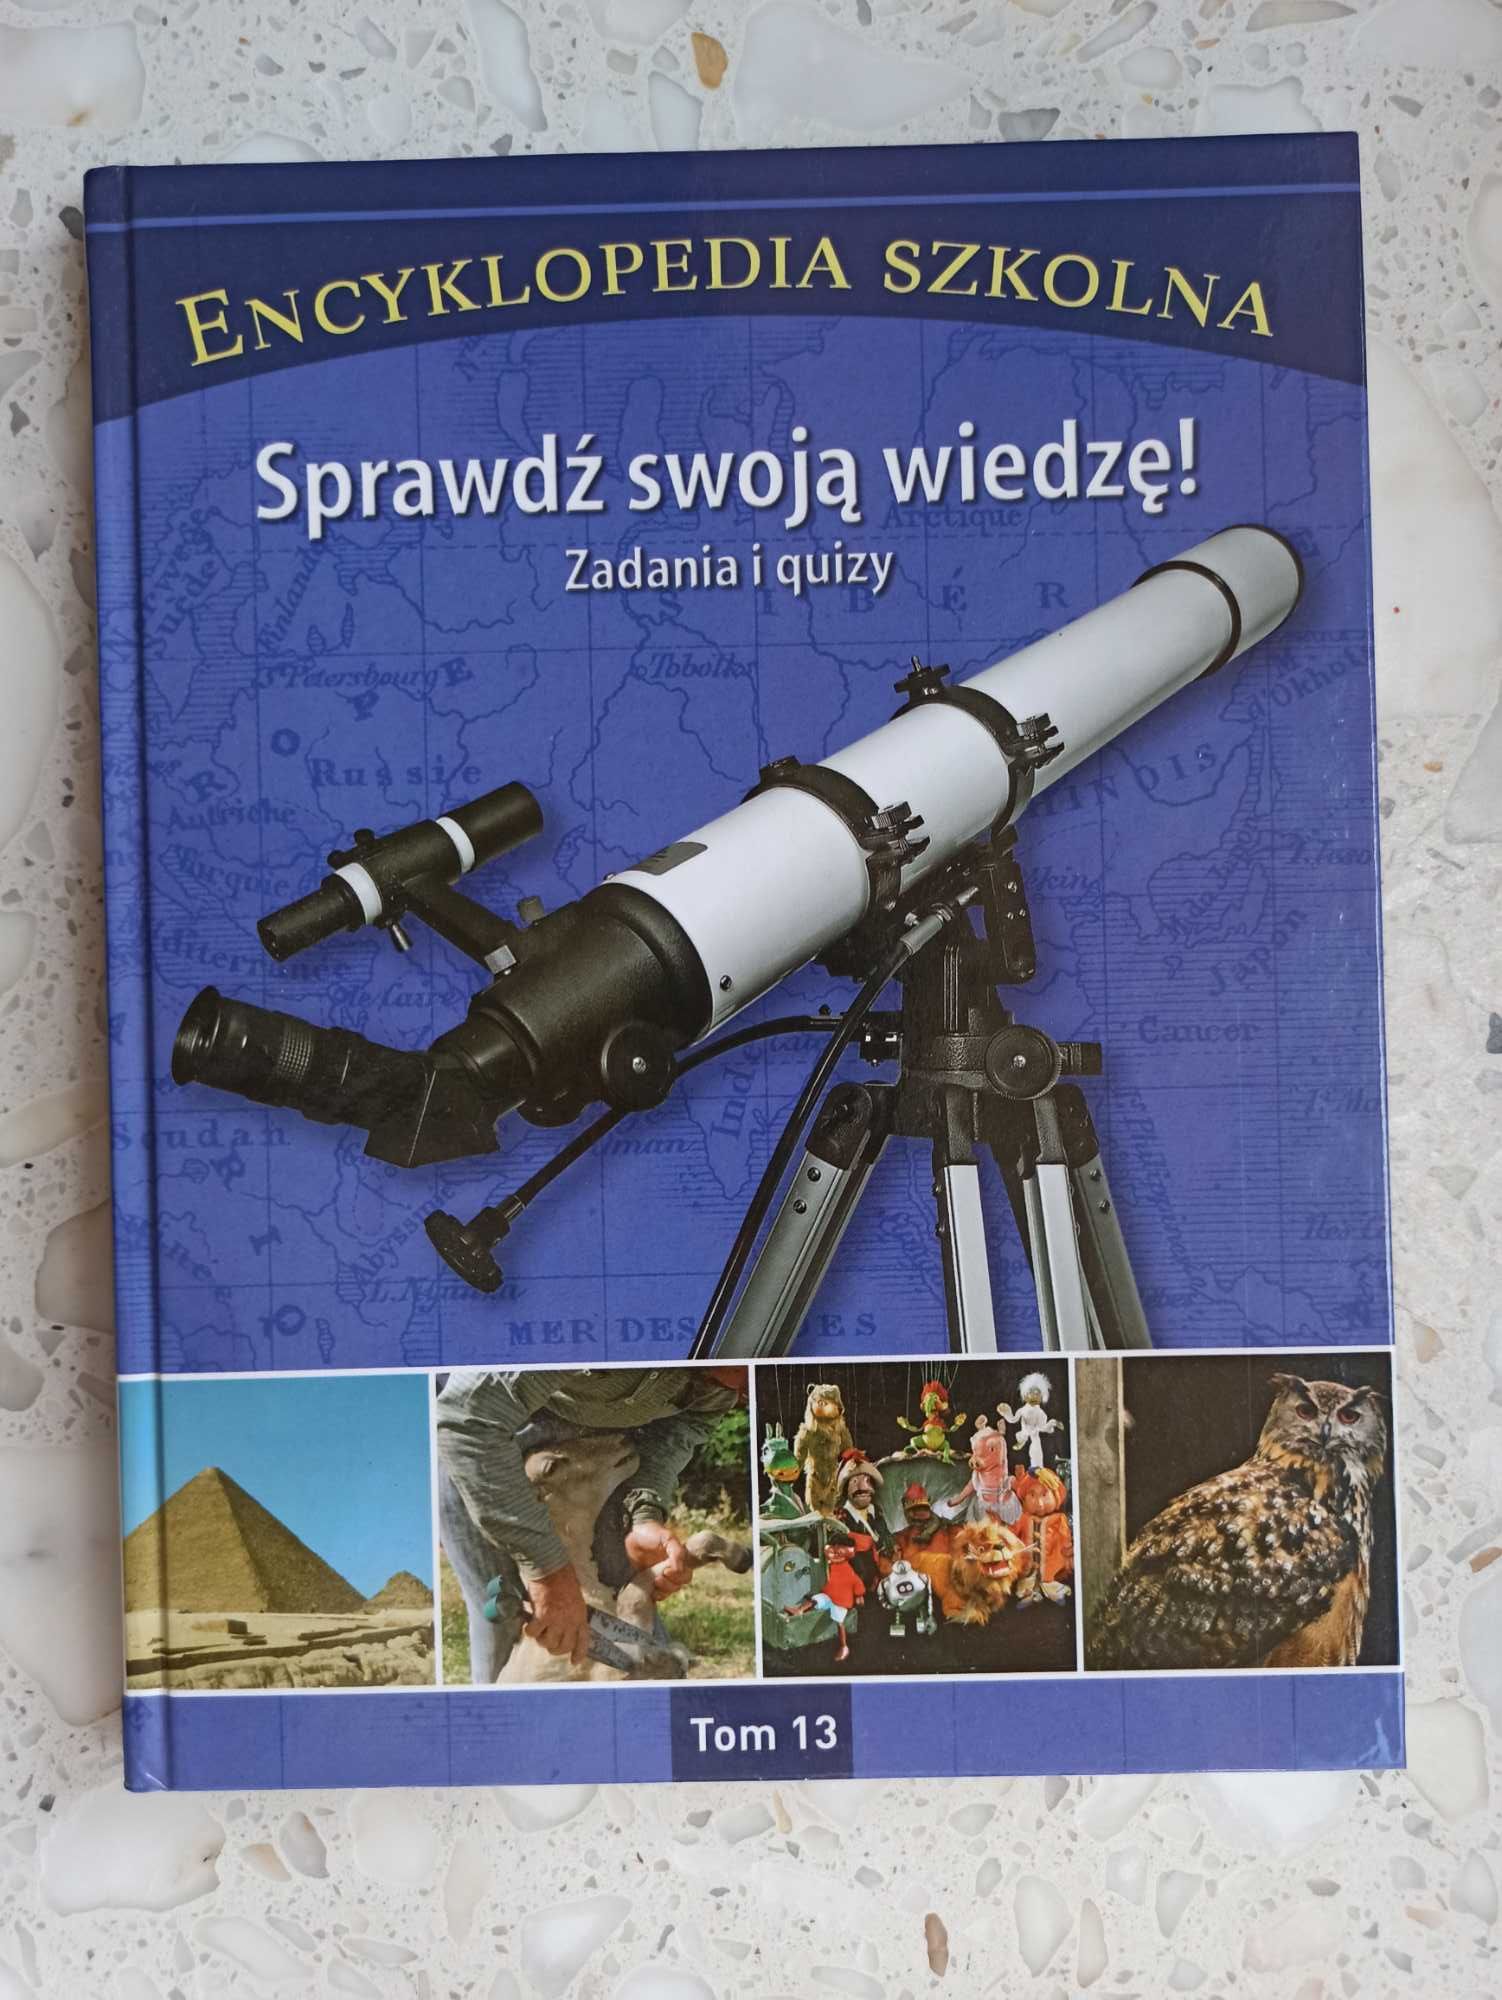 Encyklopedia Szkolna - "Sprawdź swoją wiedzę Zadania i quizy" (TOM 13)